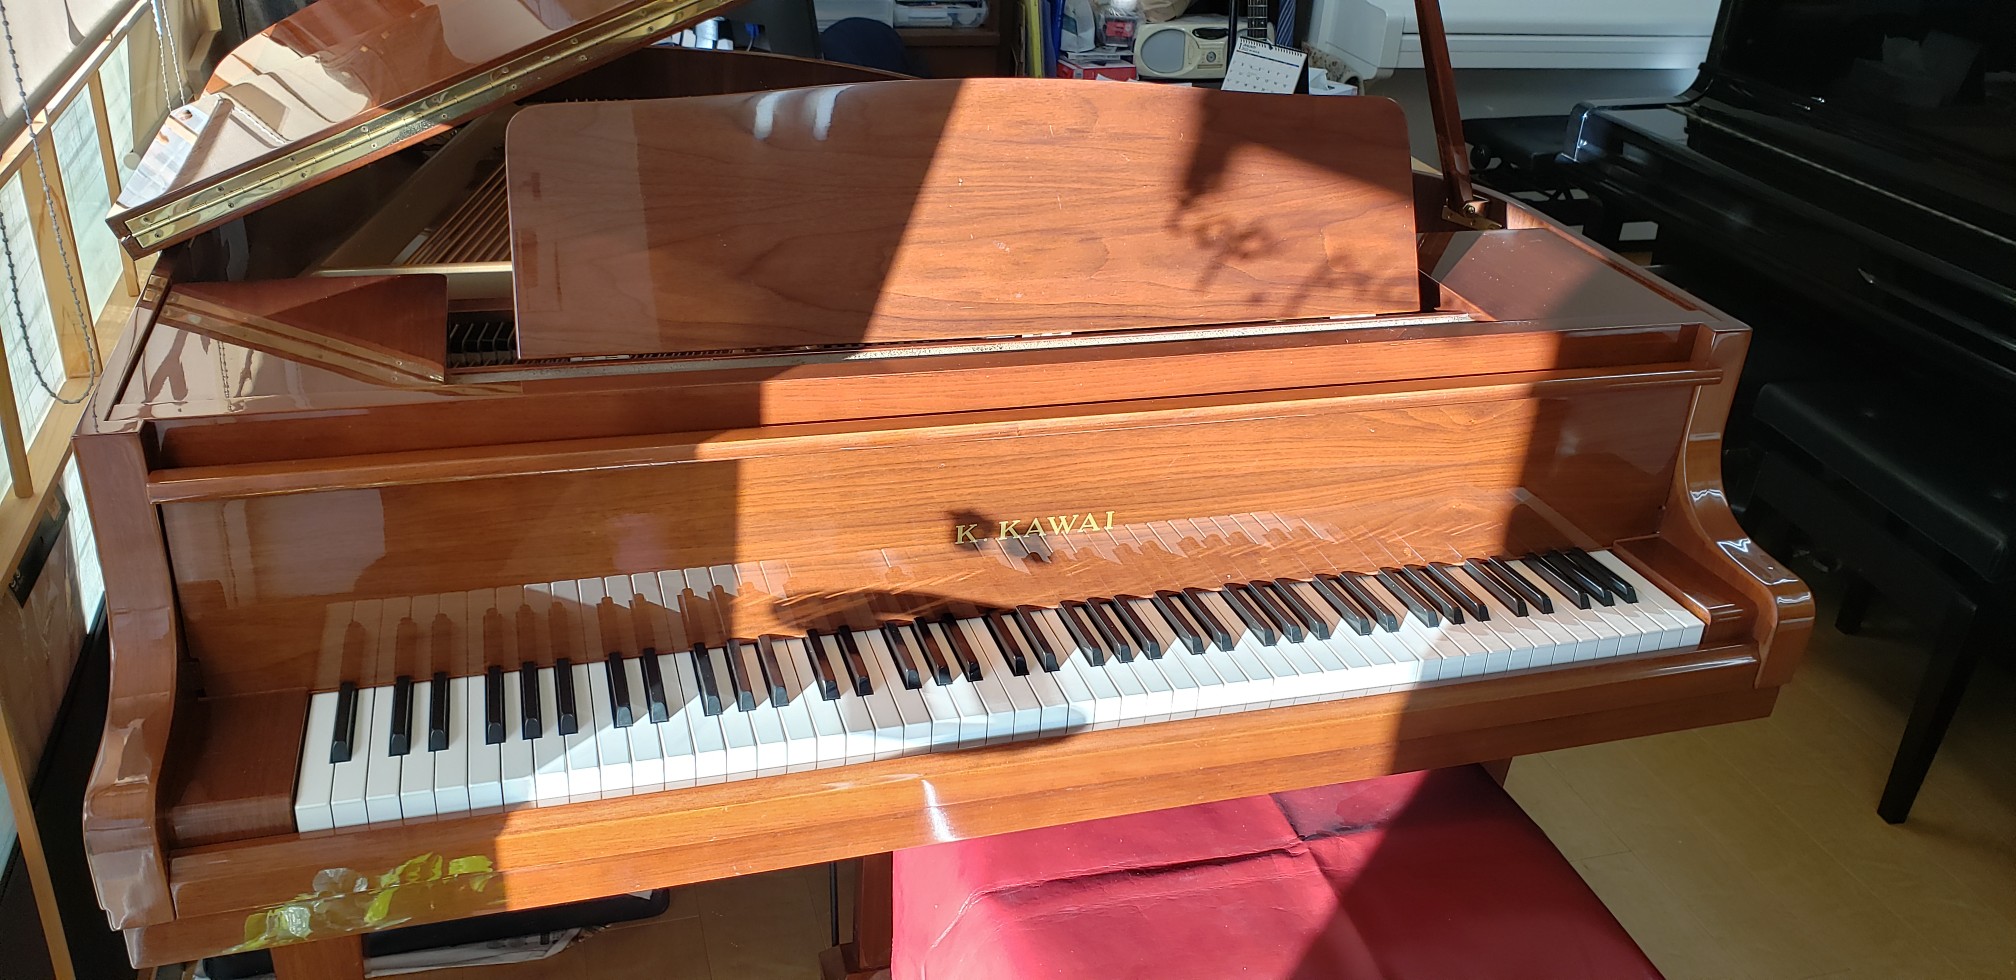 カワイグランドピアノ GM1 木目 コンパクトサイズ | ピアノ・ピアノ